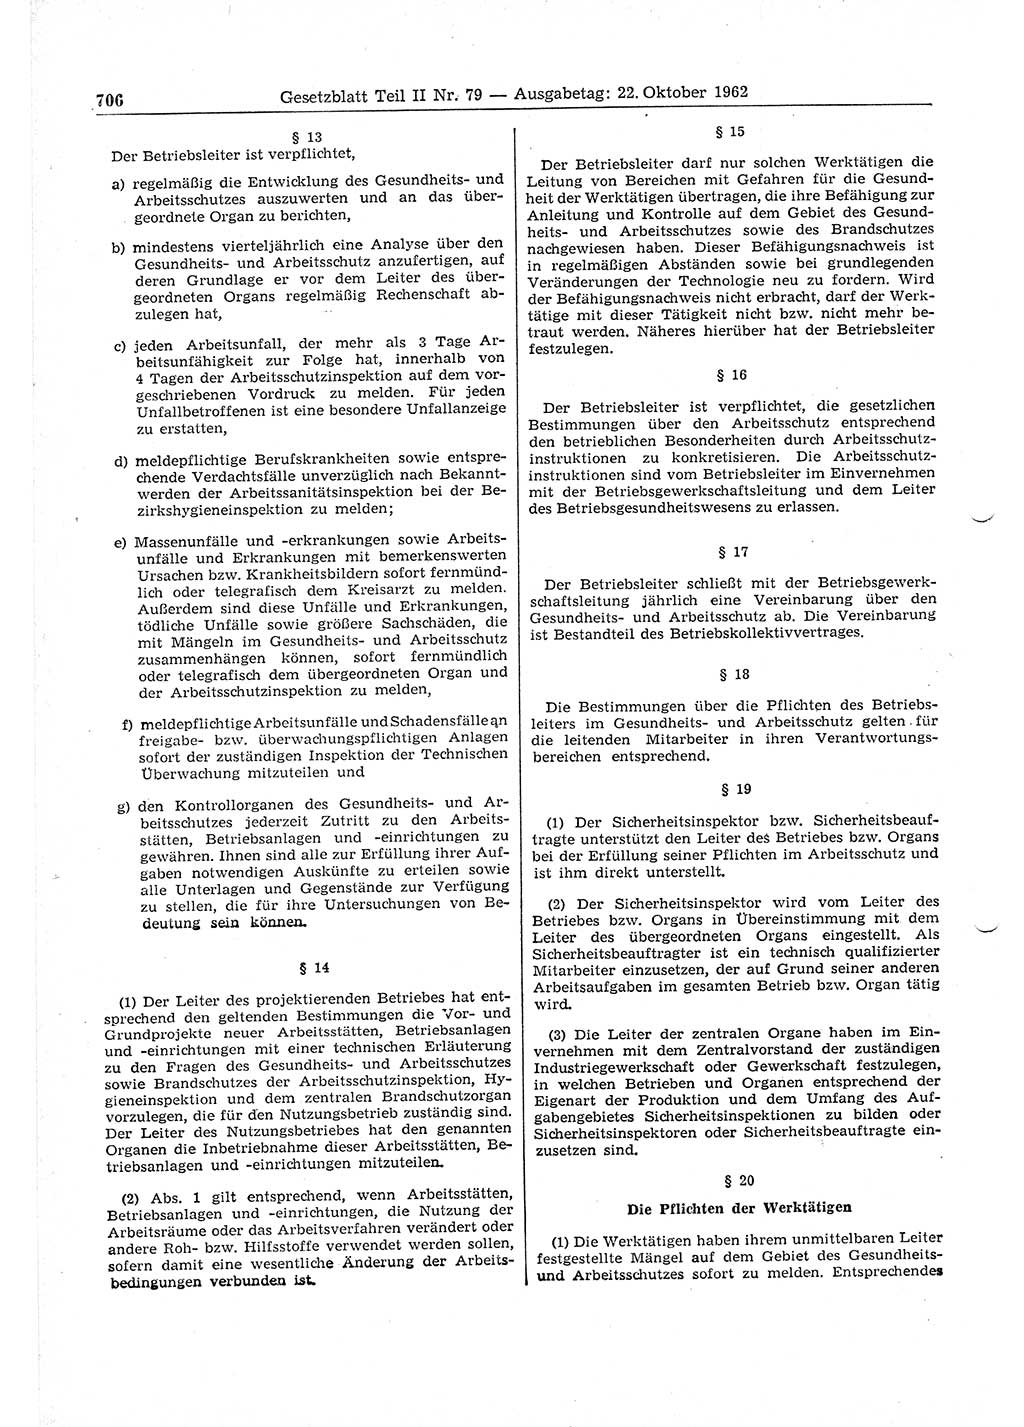 Gesetzblatt (GBl.) der Deutschen Demokratischen Republik (DDR) Teil ⅠⅠ 1962, Seite 706 (GBl. DDR ⅠⅠ 1962, S. 706)